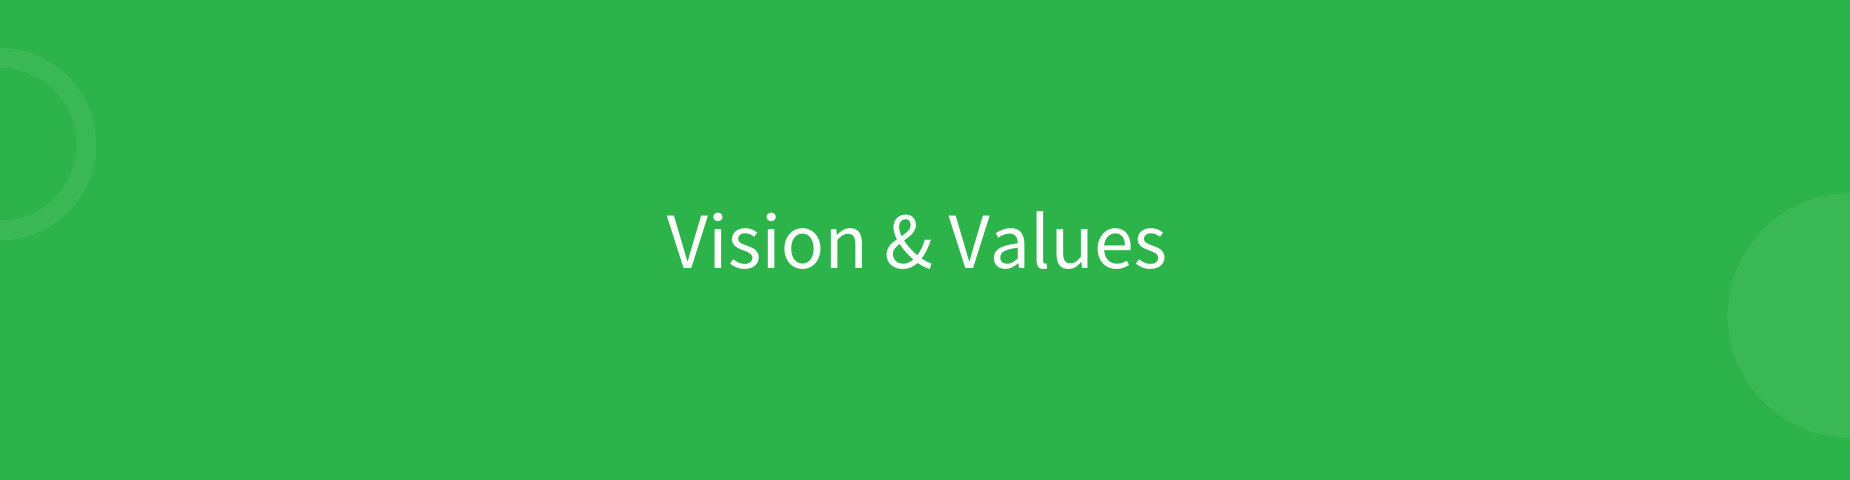 Vision & Values Header English